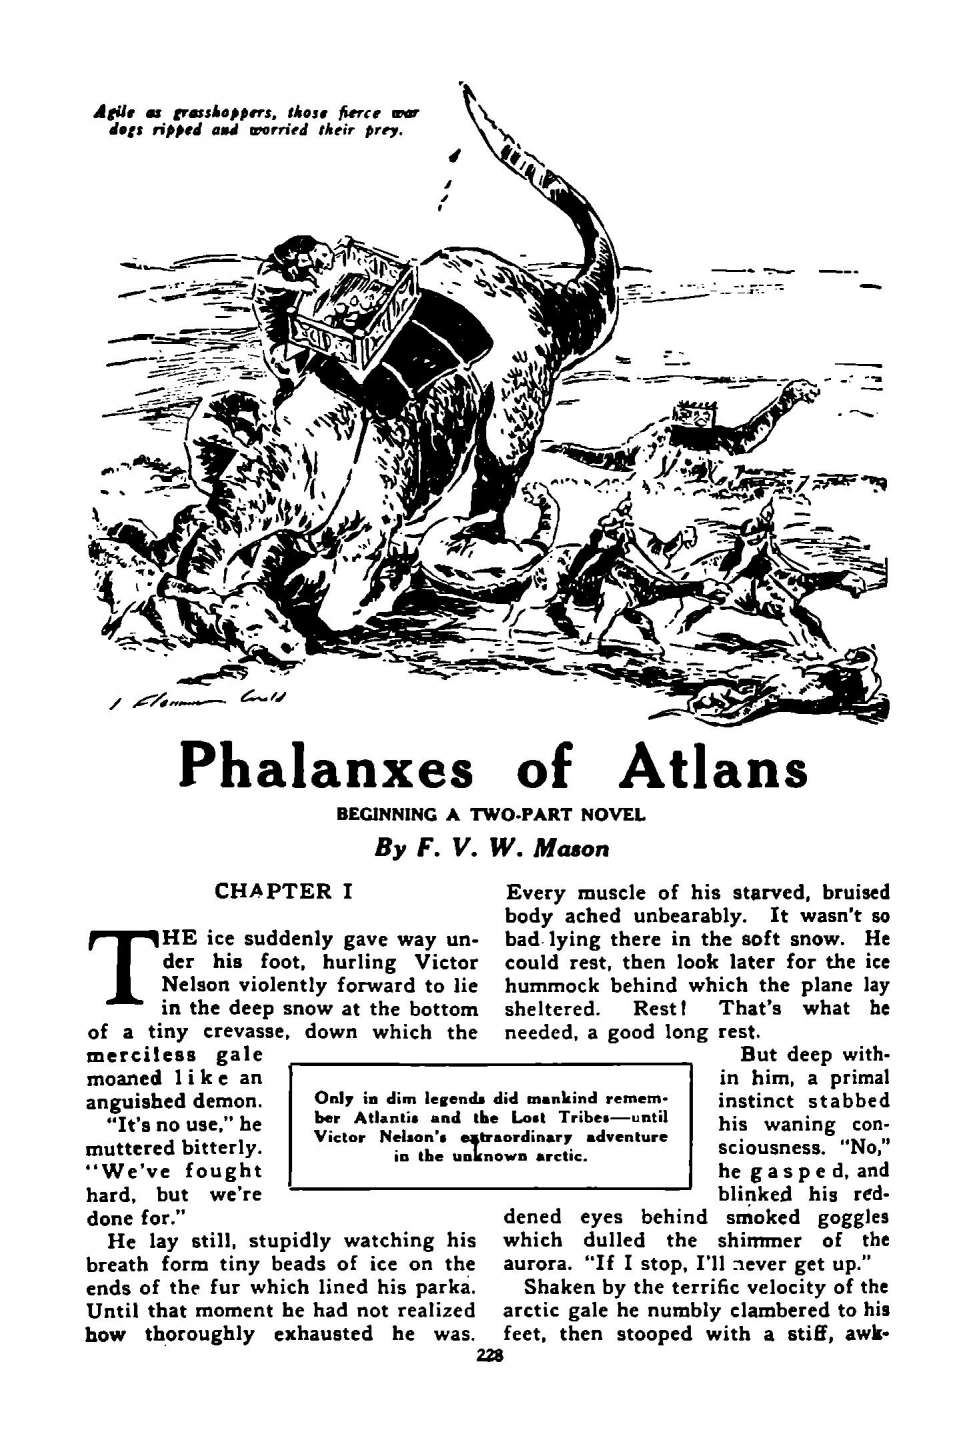 Comic Book Cover For Astounding Serial - Phalanxes of Atlans - F V W Mason